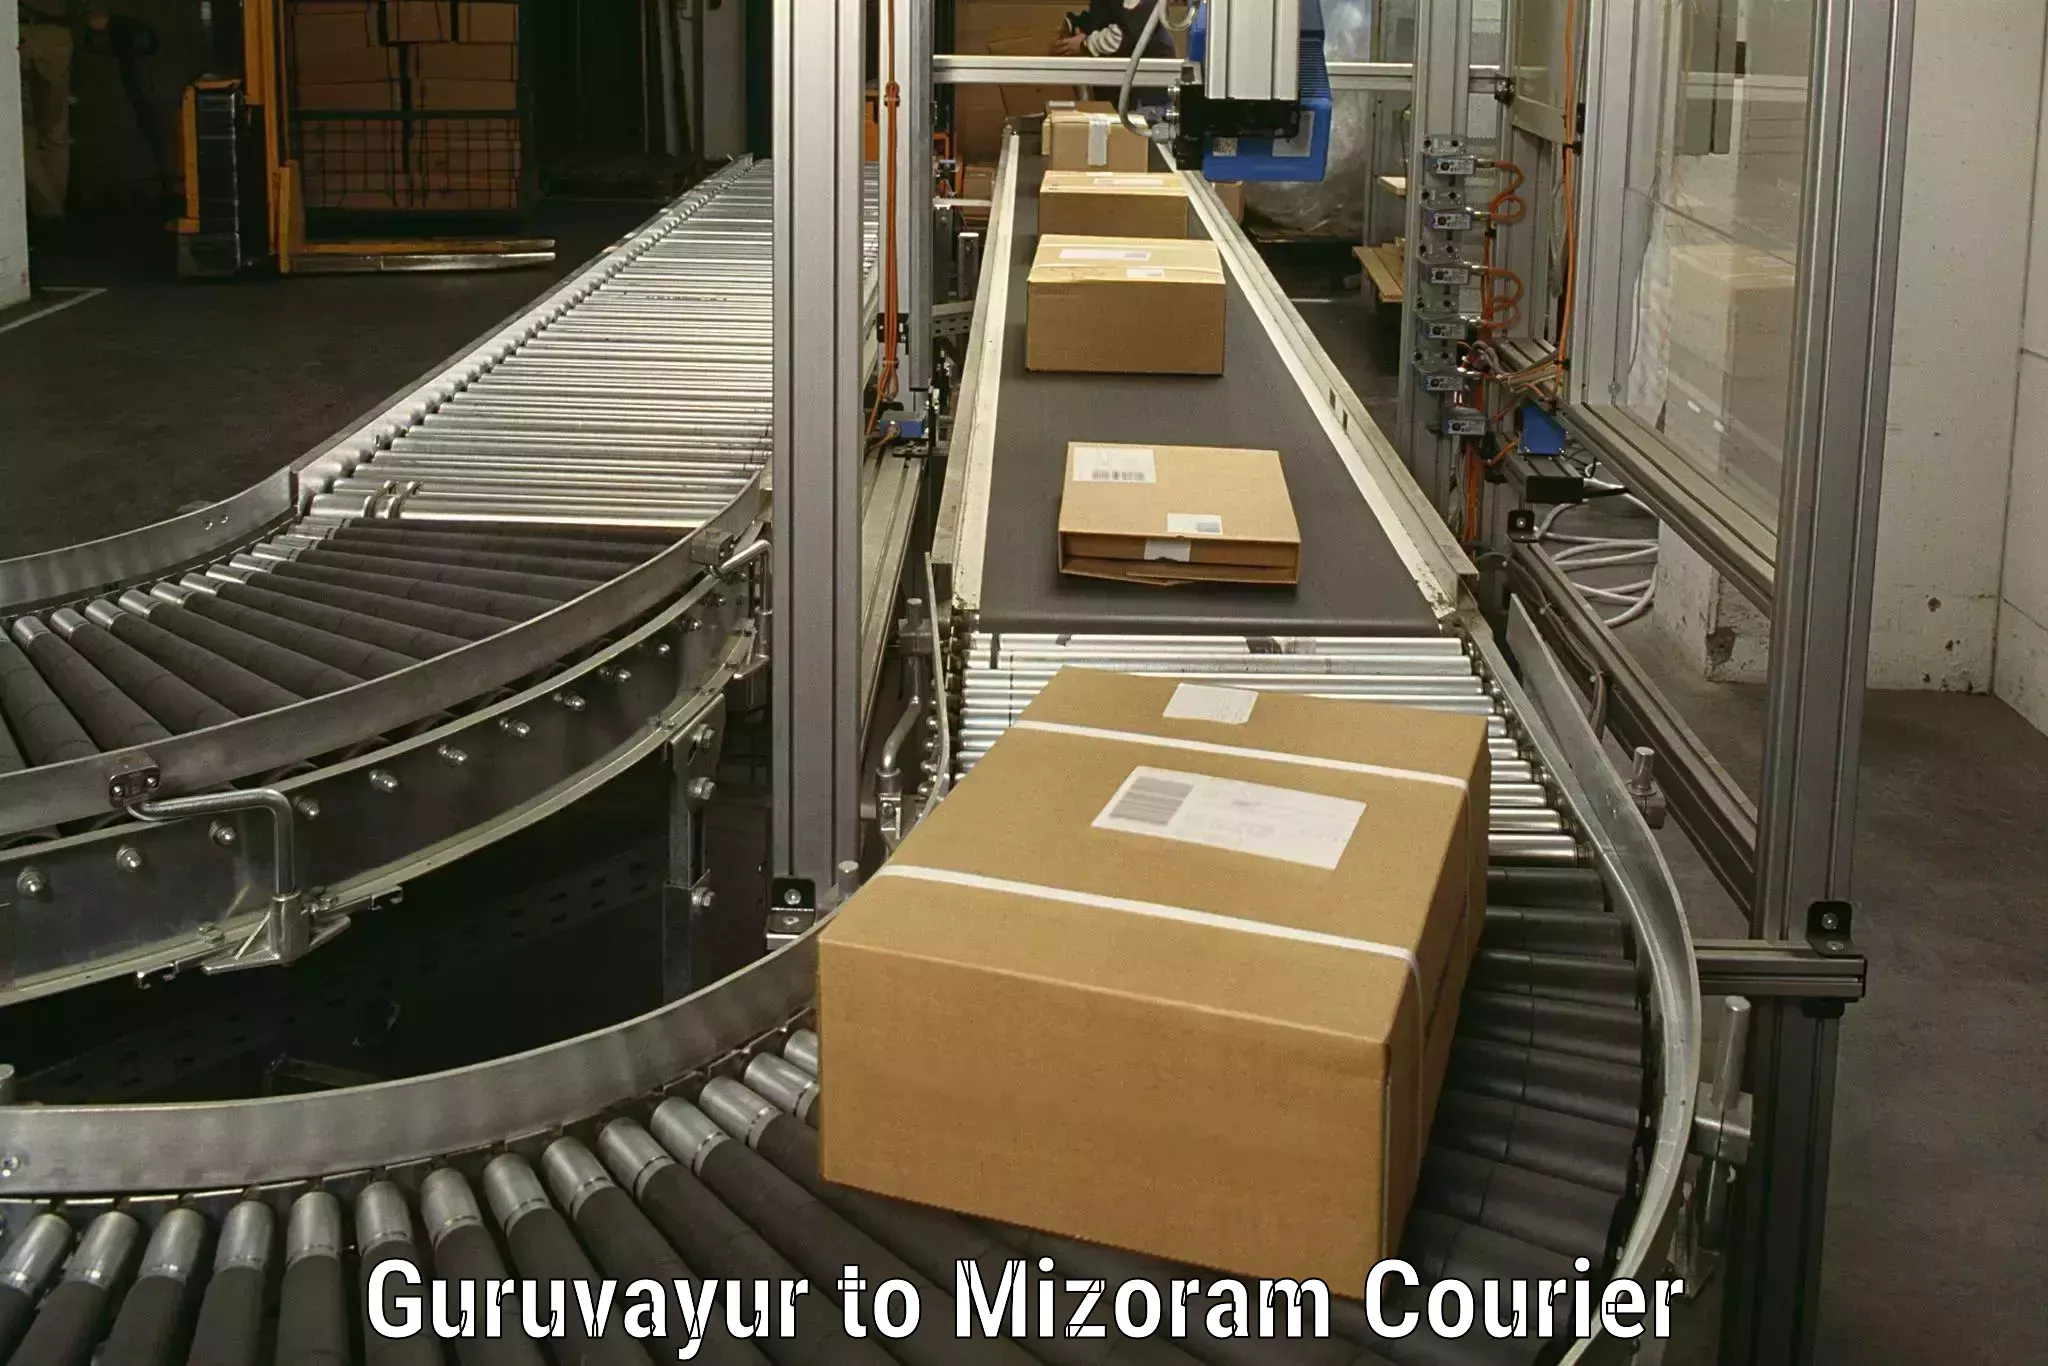 Household goods transporters Guruvayur to Darlawn